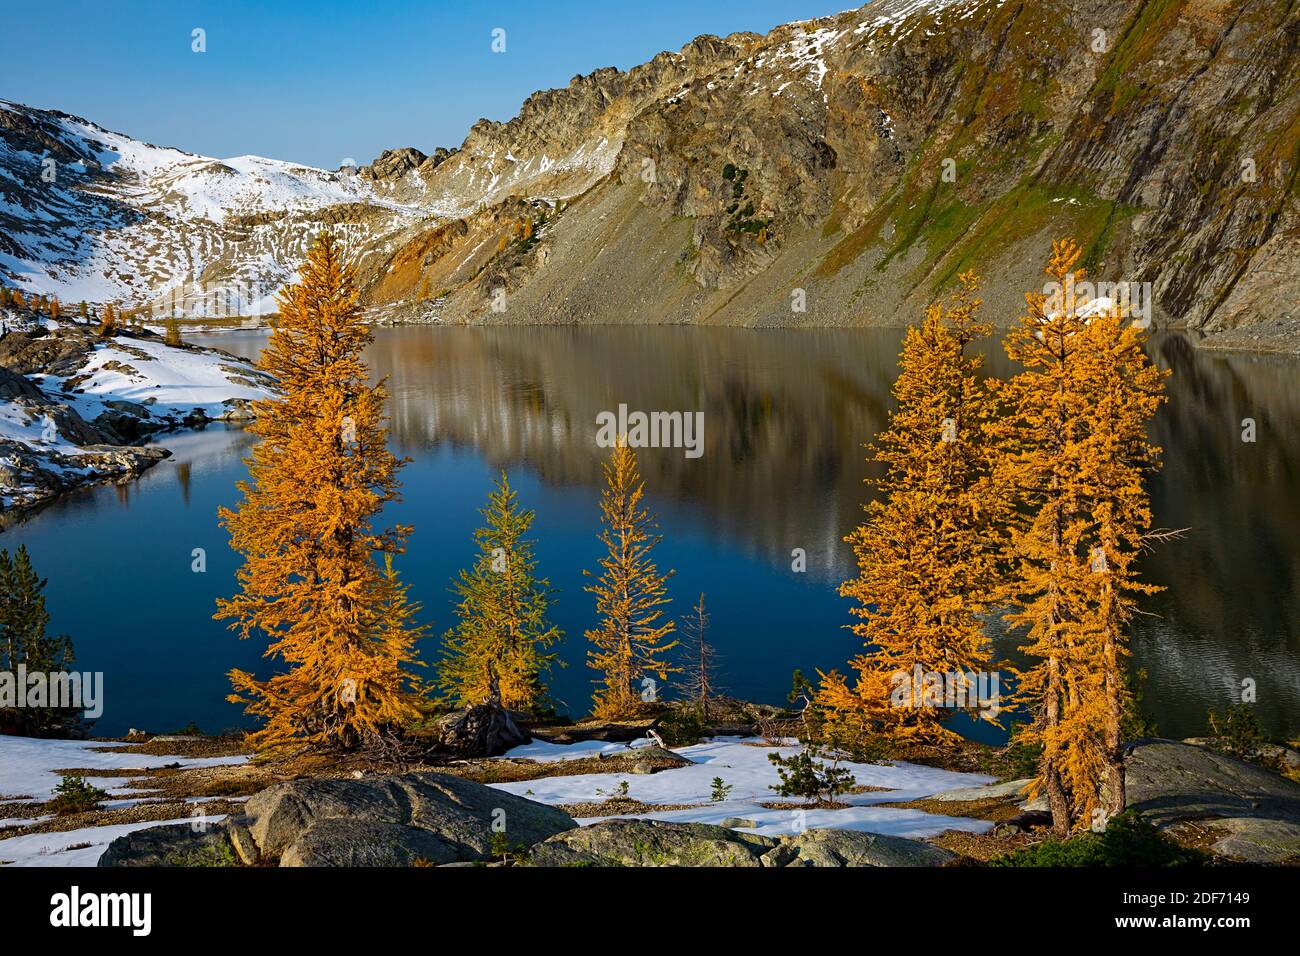 WA18661-00...WASHINGTON - mélèze subalpin en couleur d'automne à Upper Ice Lake dans la région sauvage de Glacier Peak. Banque D'Images